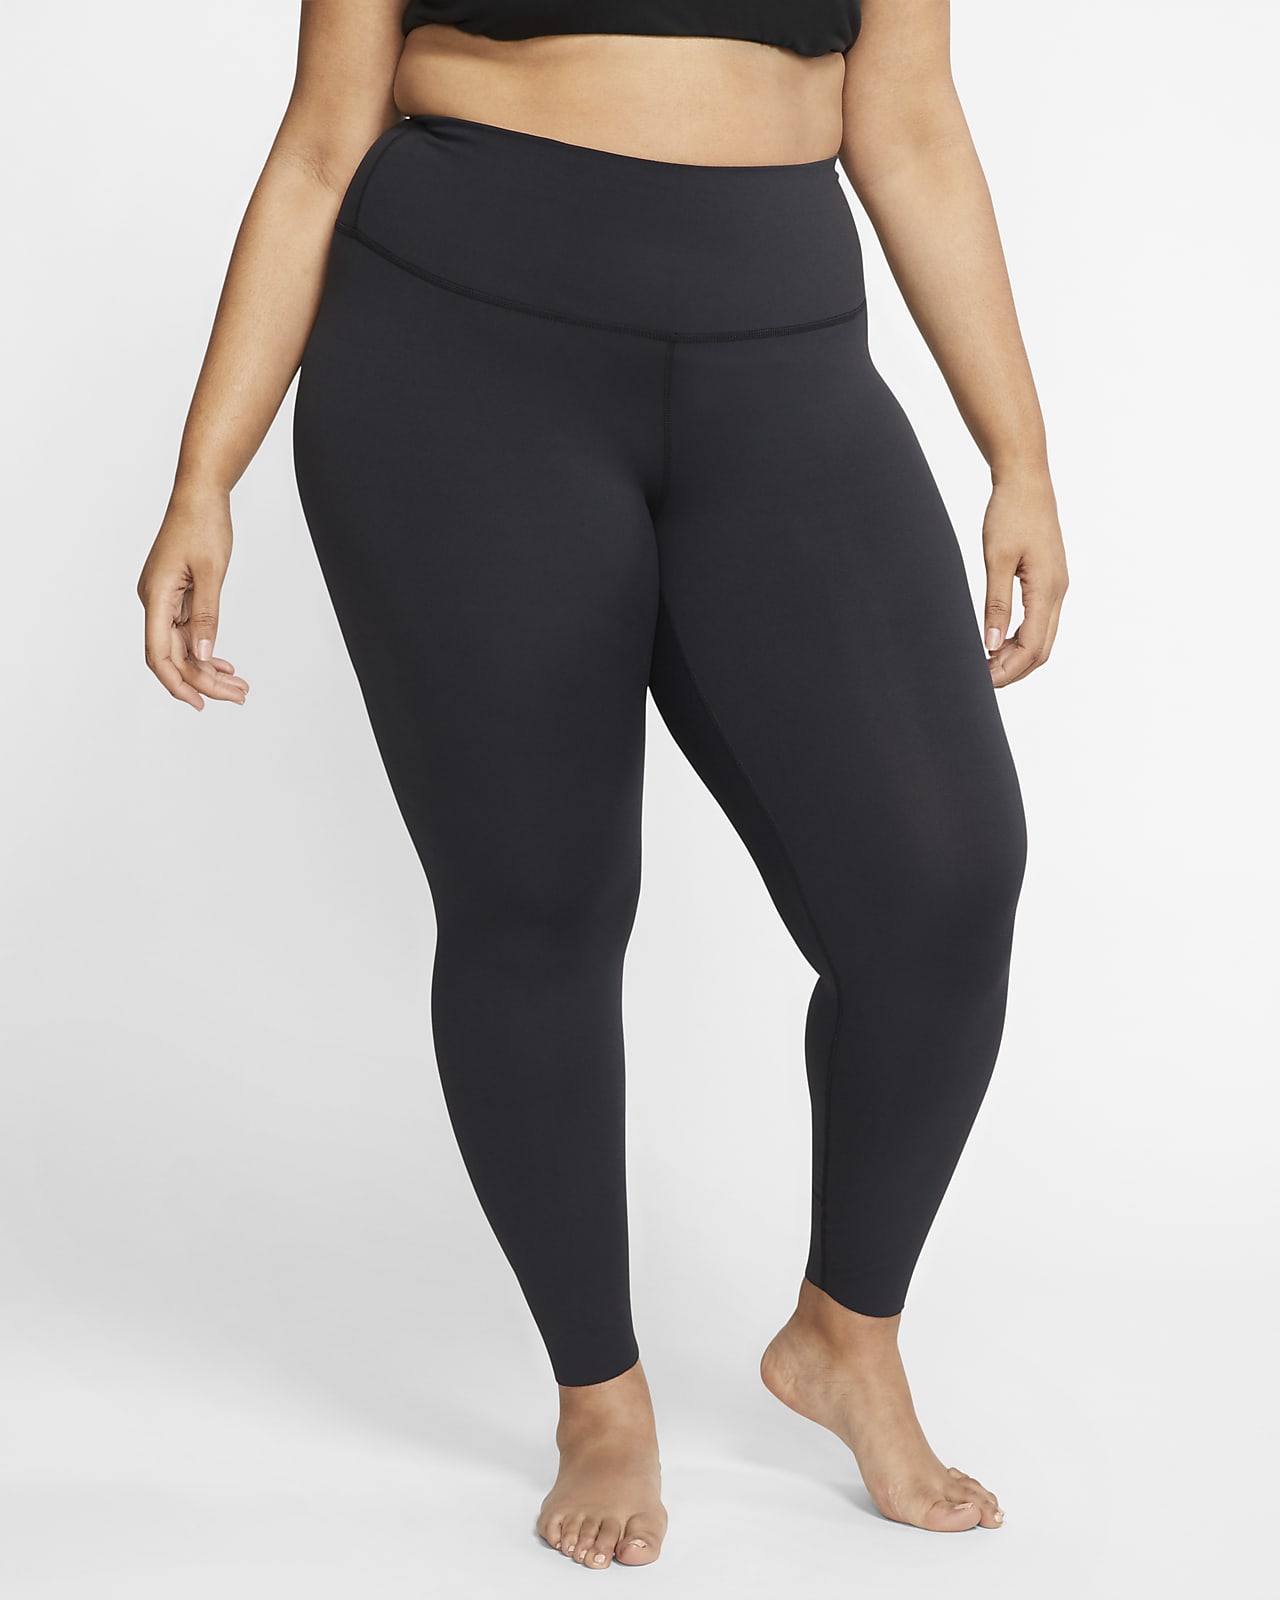 Nike Plus Size Yoga Pants